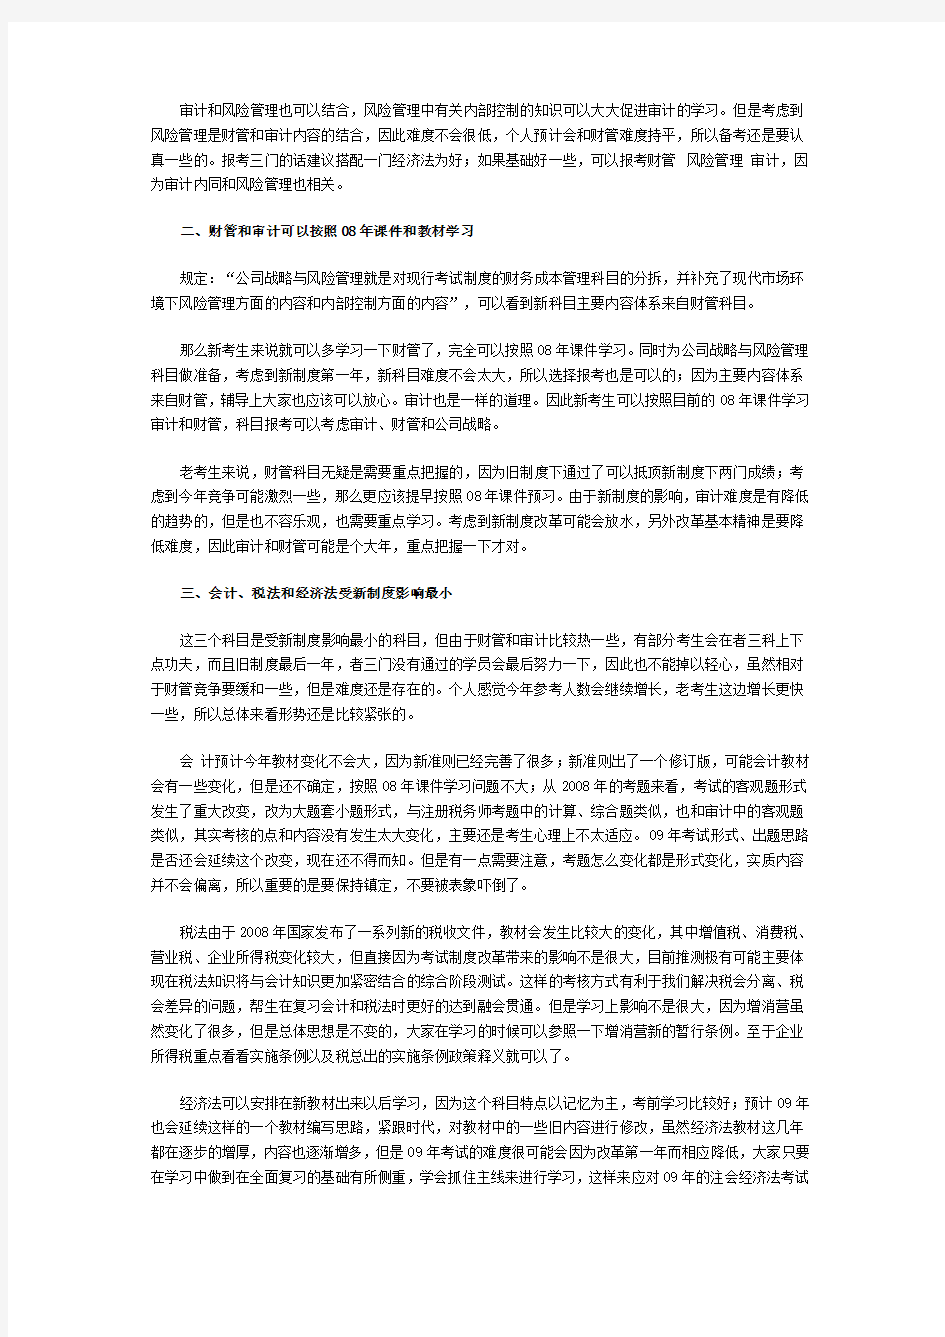 注册会计师(CPA)报名条件具有下列条件之一的中国公民,可报名参加考试